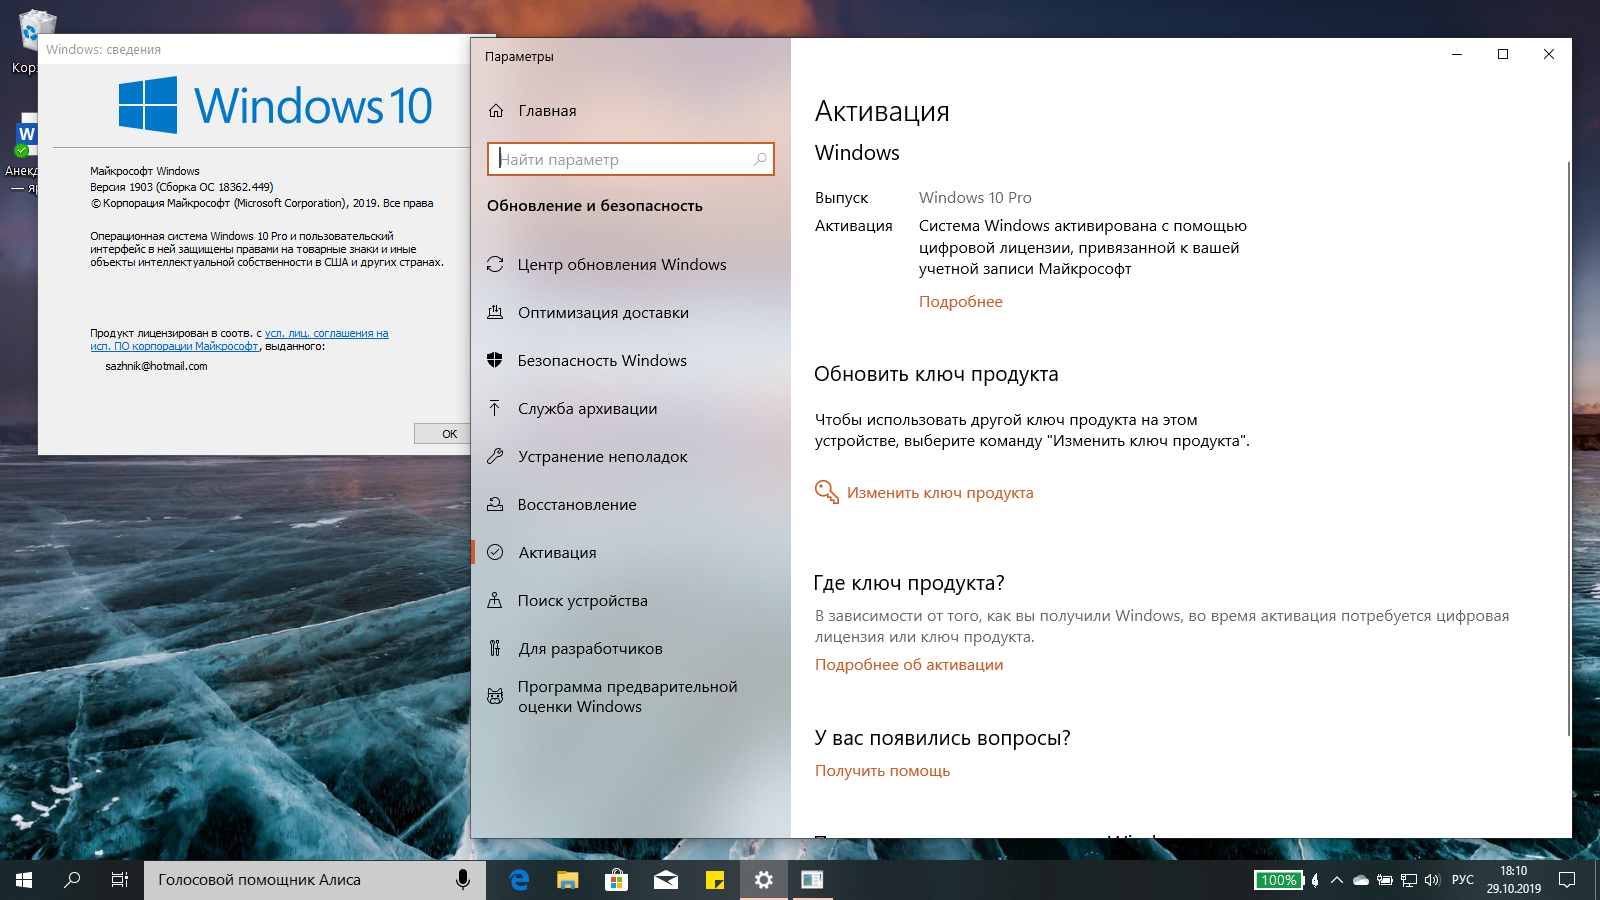 Windows 10 активированная - все способы активации